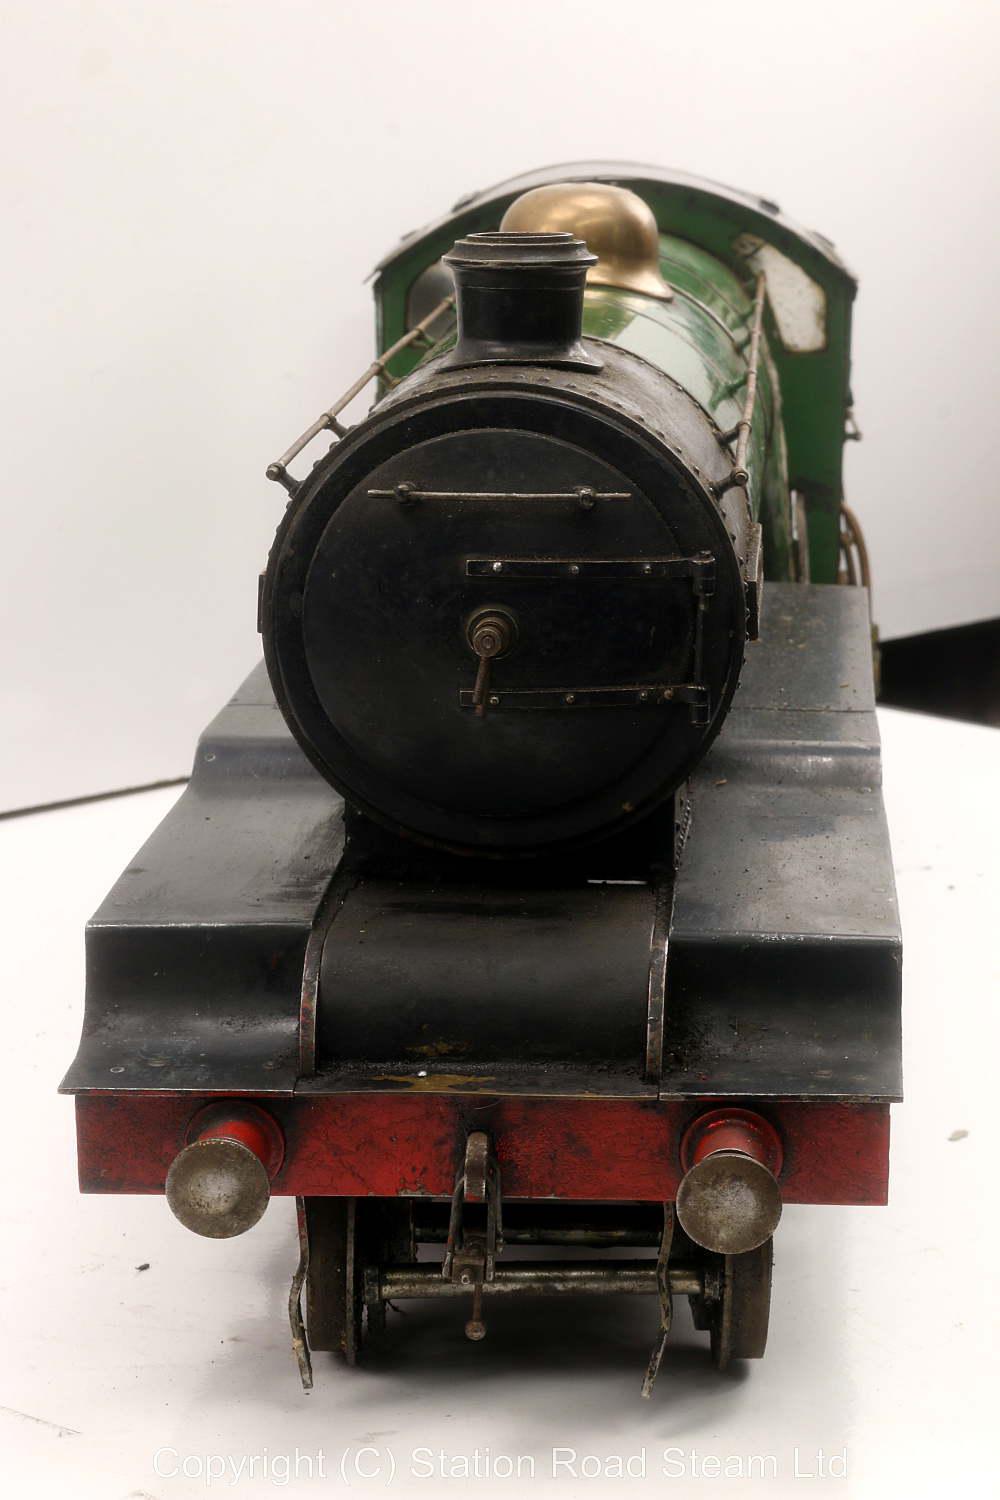 3 1/2 inch gauge LNER V4 